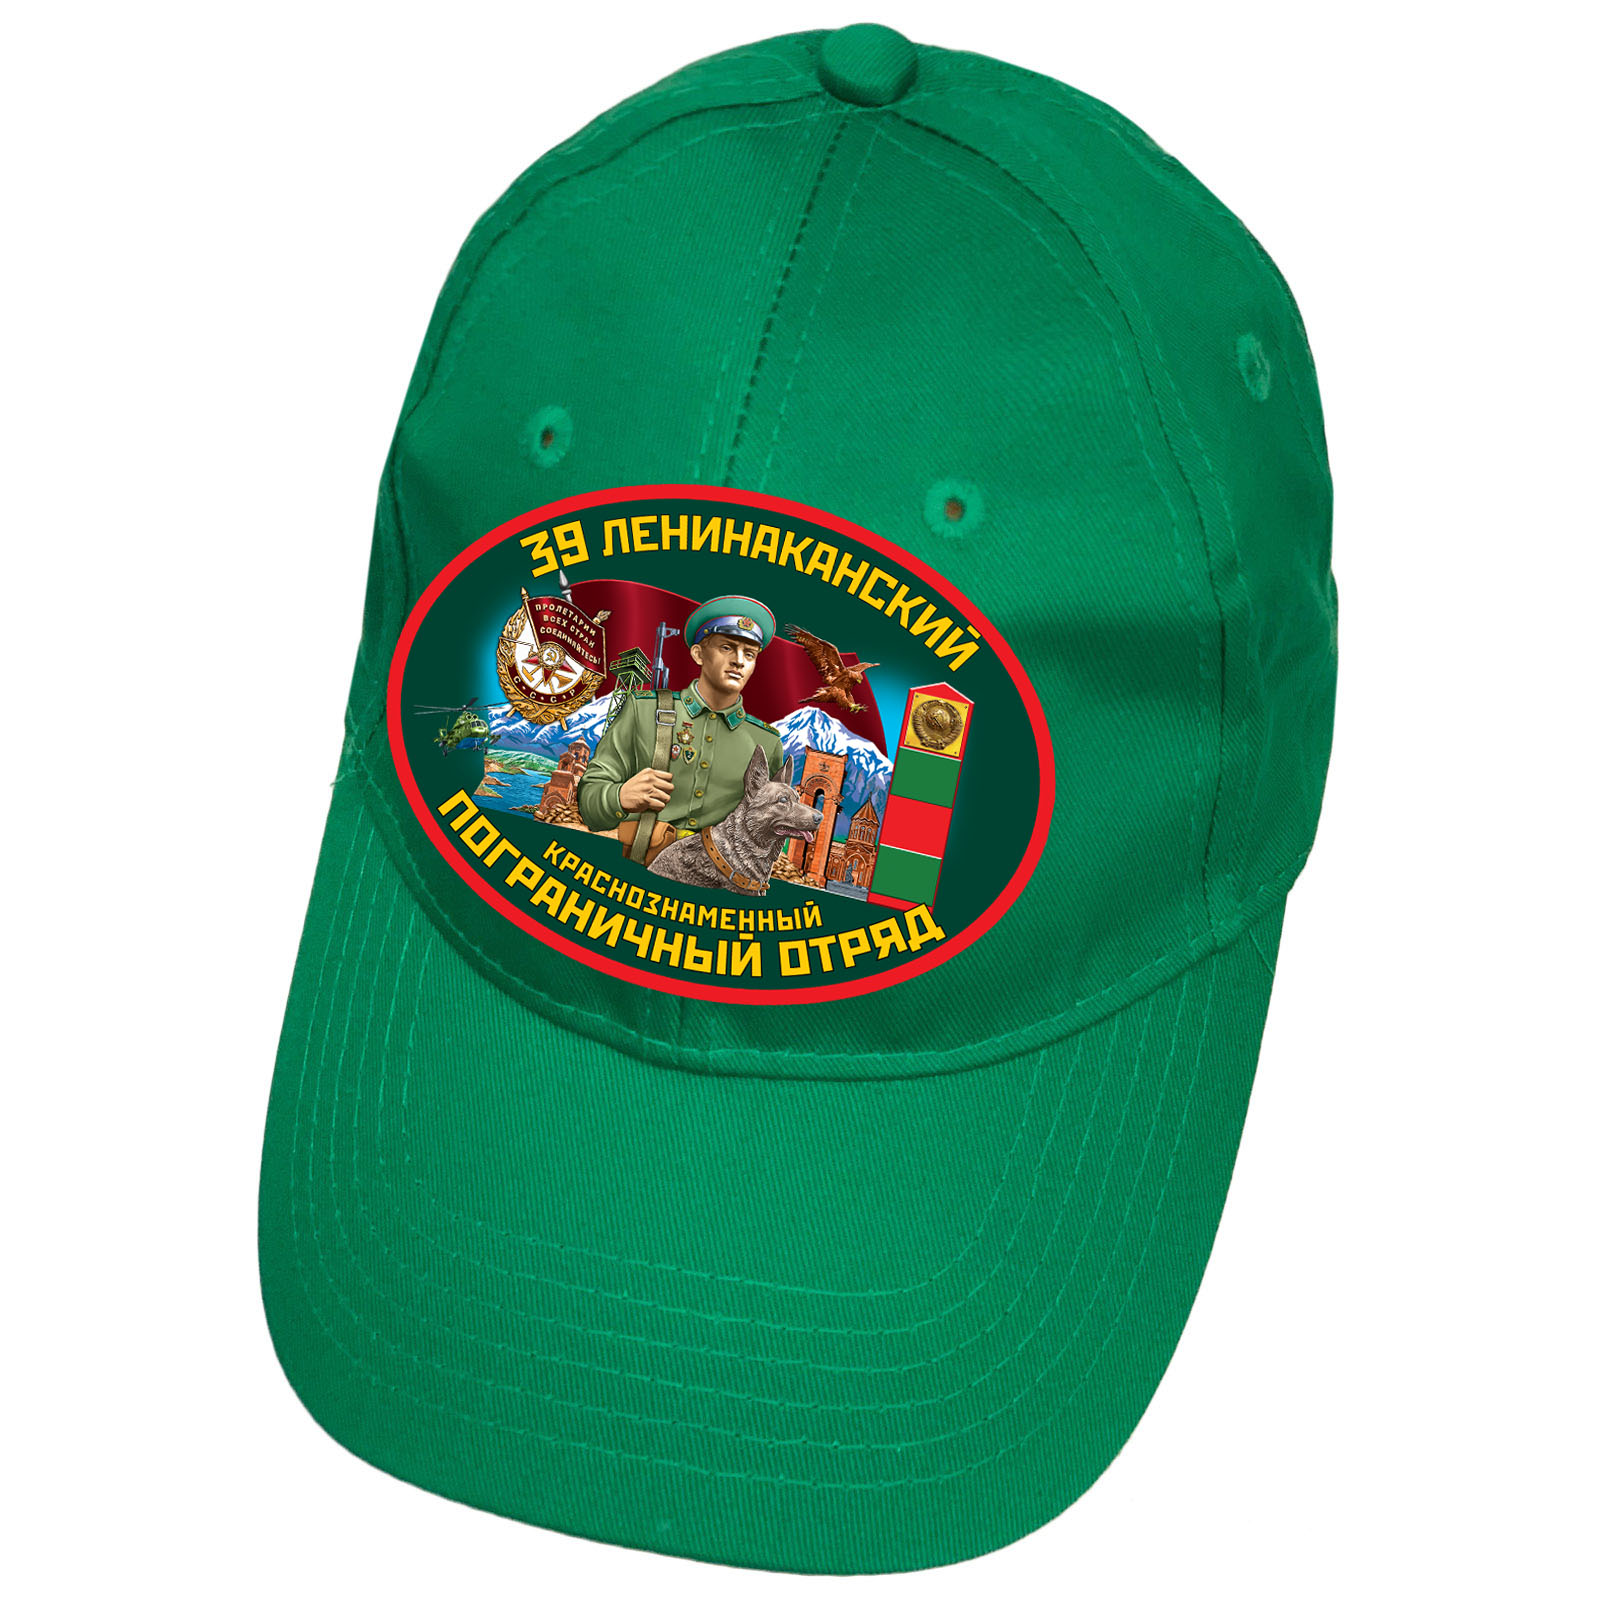 Зелёная кепка "39 Ленинаканский погранотряд"